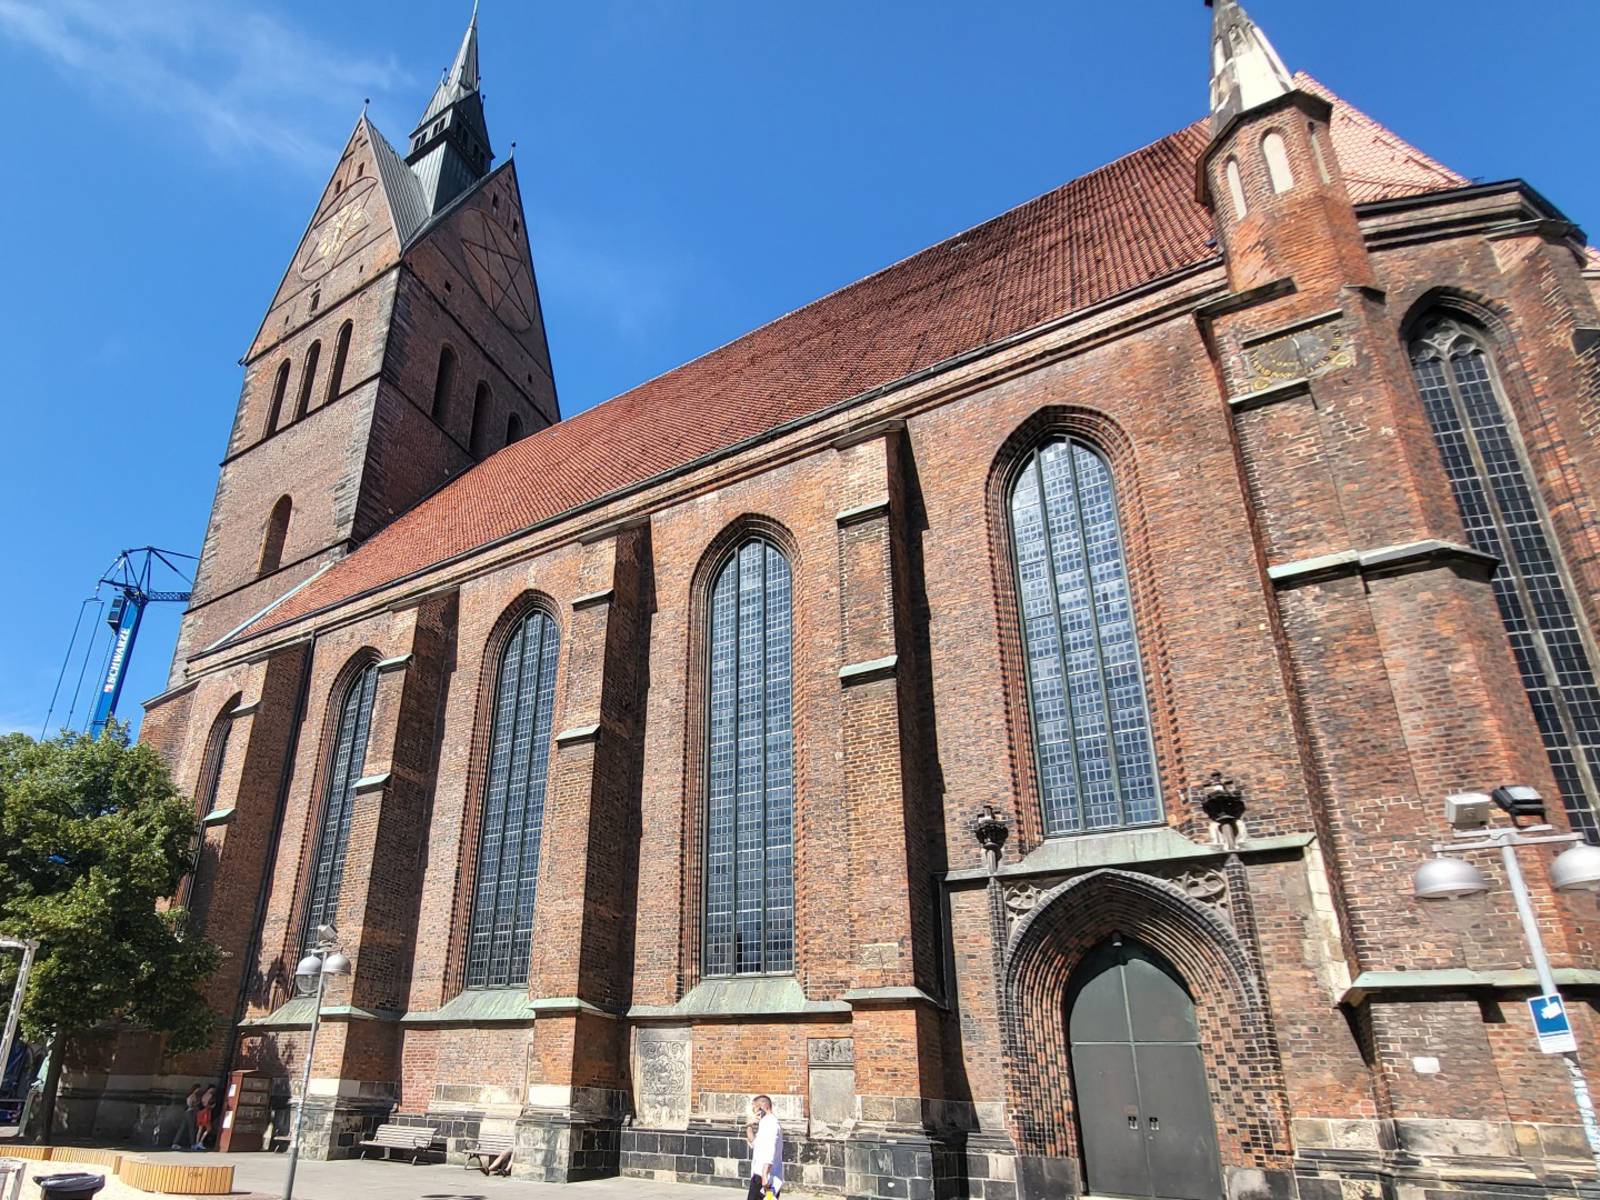 Südseite der Marktkirche in Hannover